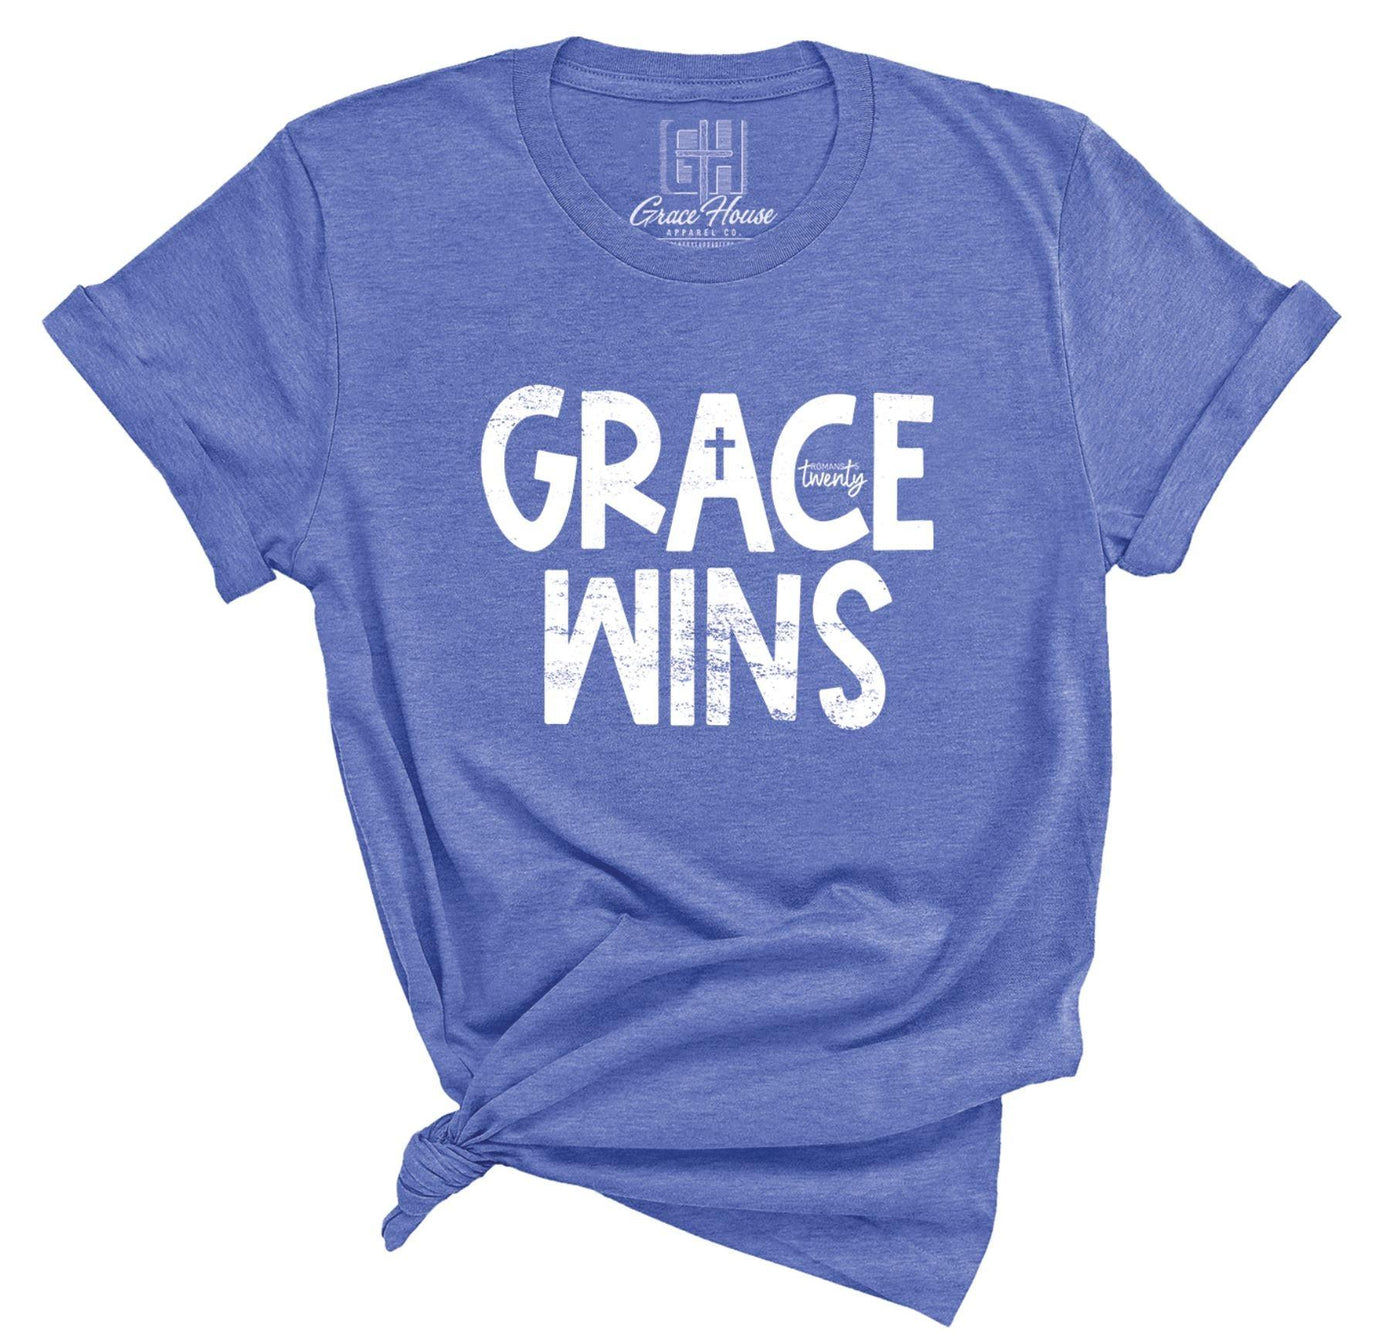 Grace Wins - Grace & Co. Designs 